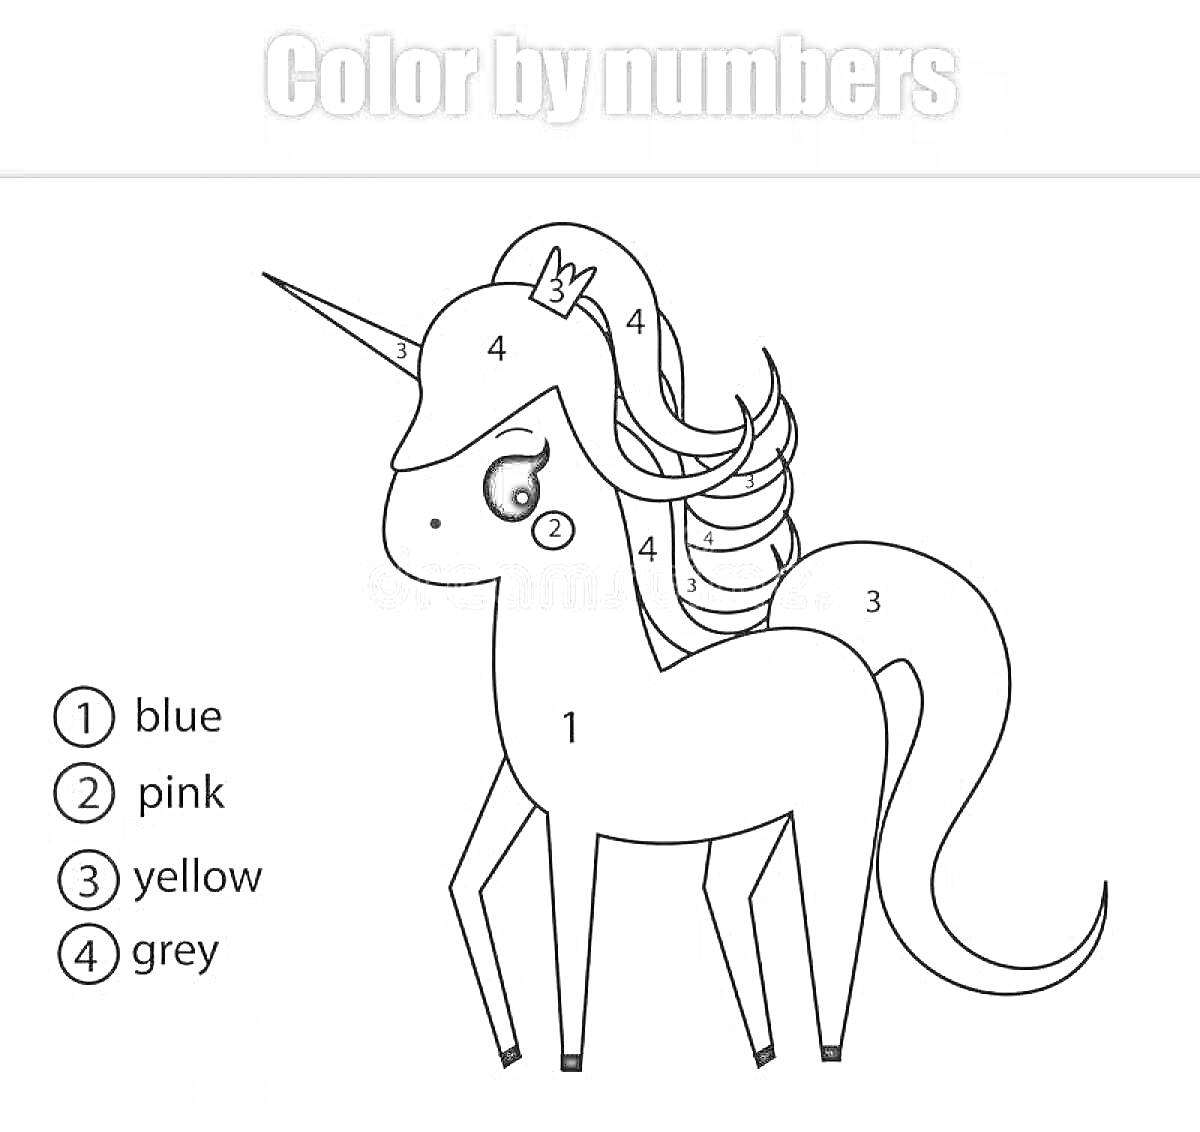 Раскраска Единорог по номерам с цветами: синий, розовый, жёлтый и серый. Элементы: глаза, грива, хвост, тело, копыта, рог, корона.